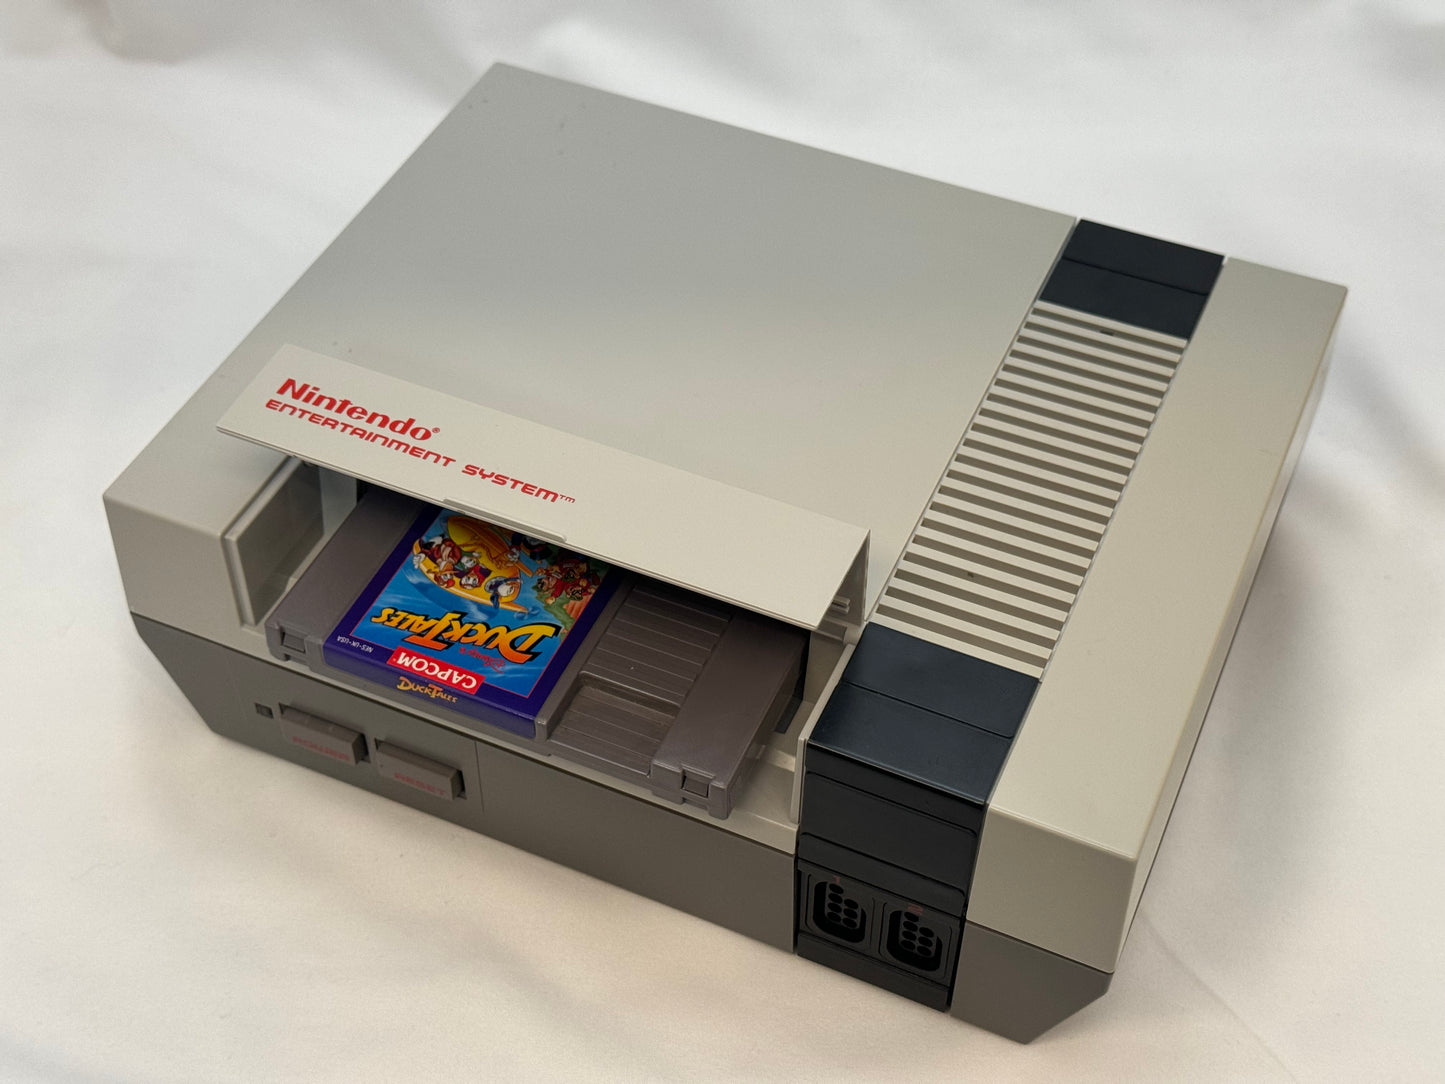 Ninten-Drawer for Nintendo NES, extended, Nintendrawer